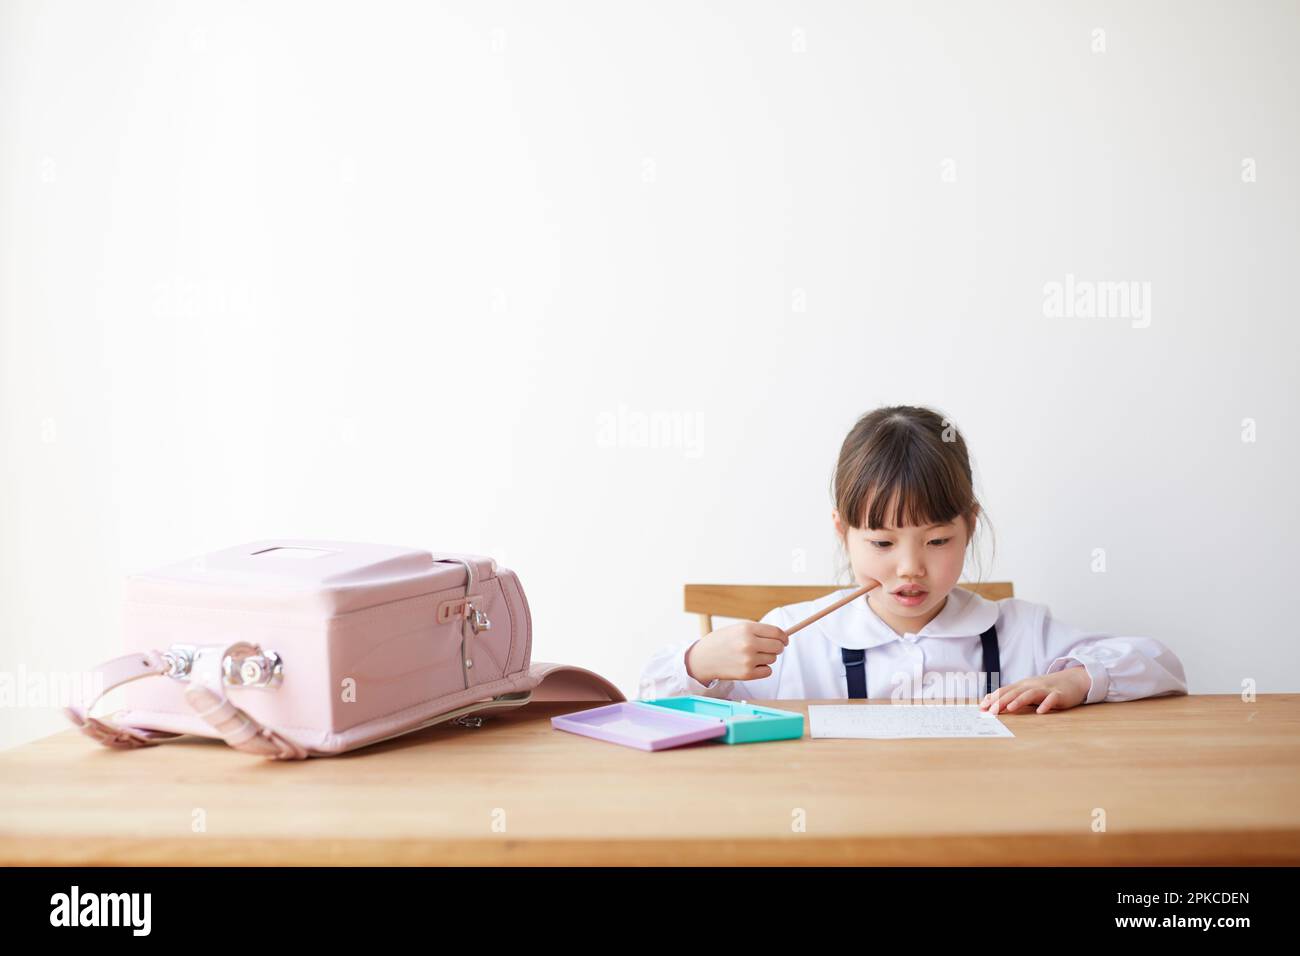 Ragazza che studia con la borsa scolastica sparsa sul tavolo Foto Stock